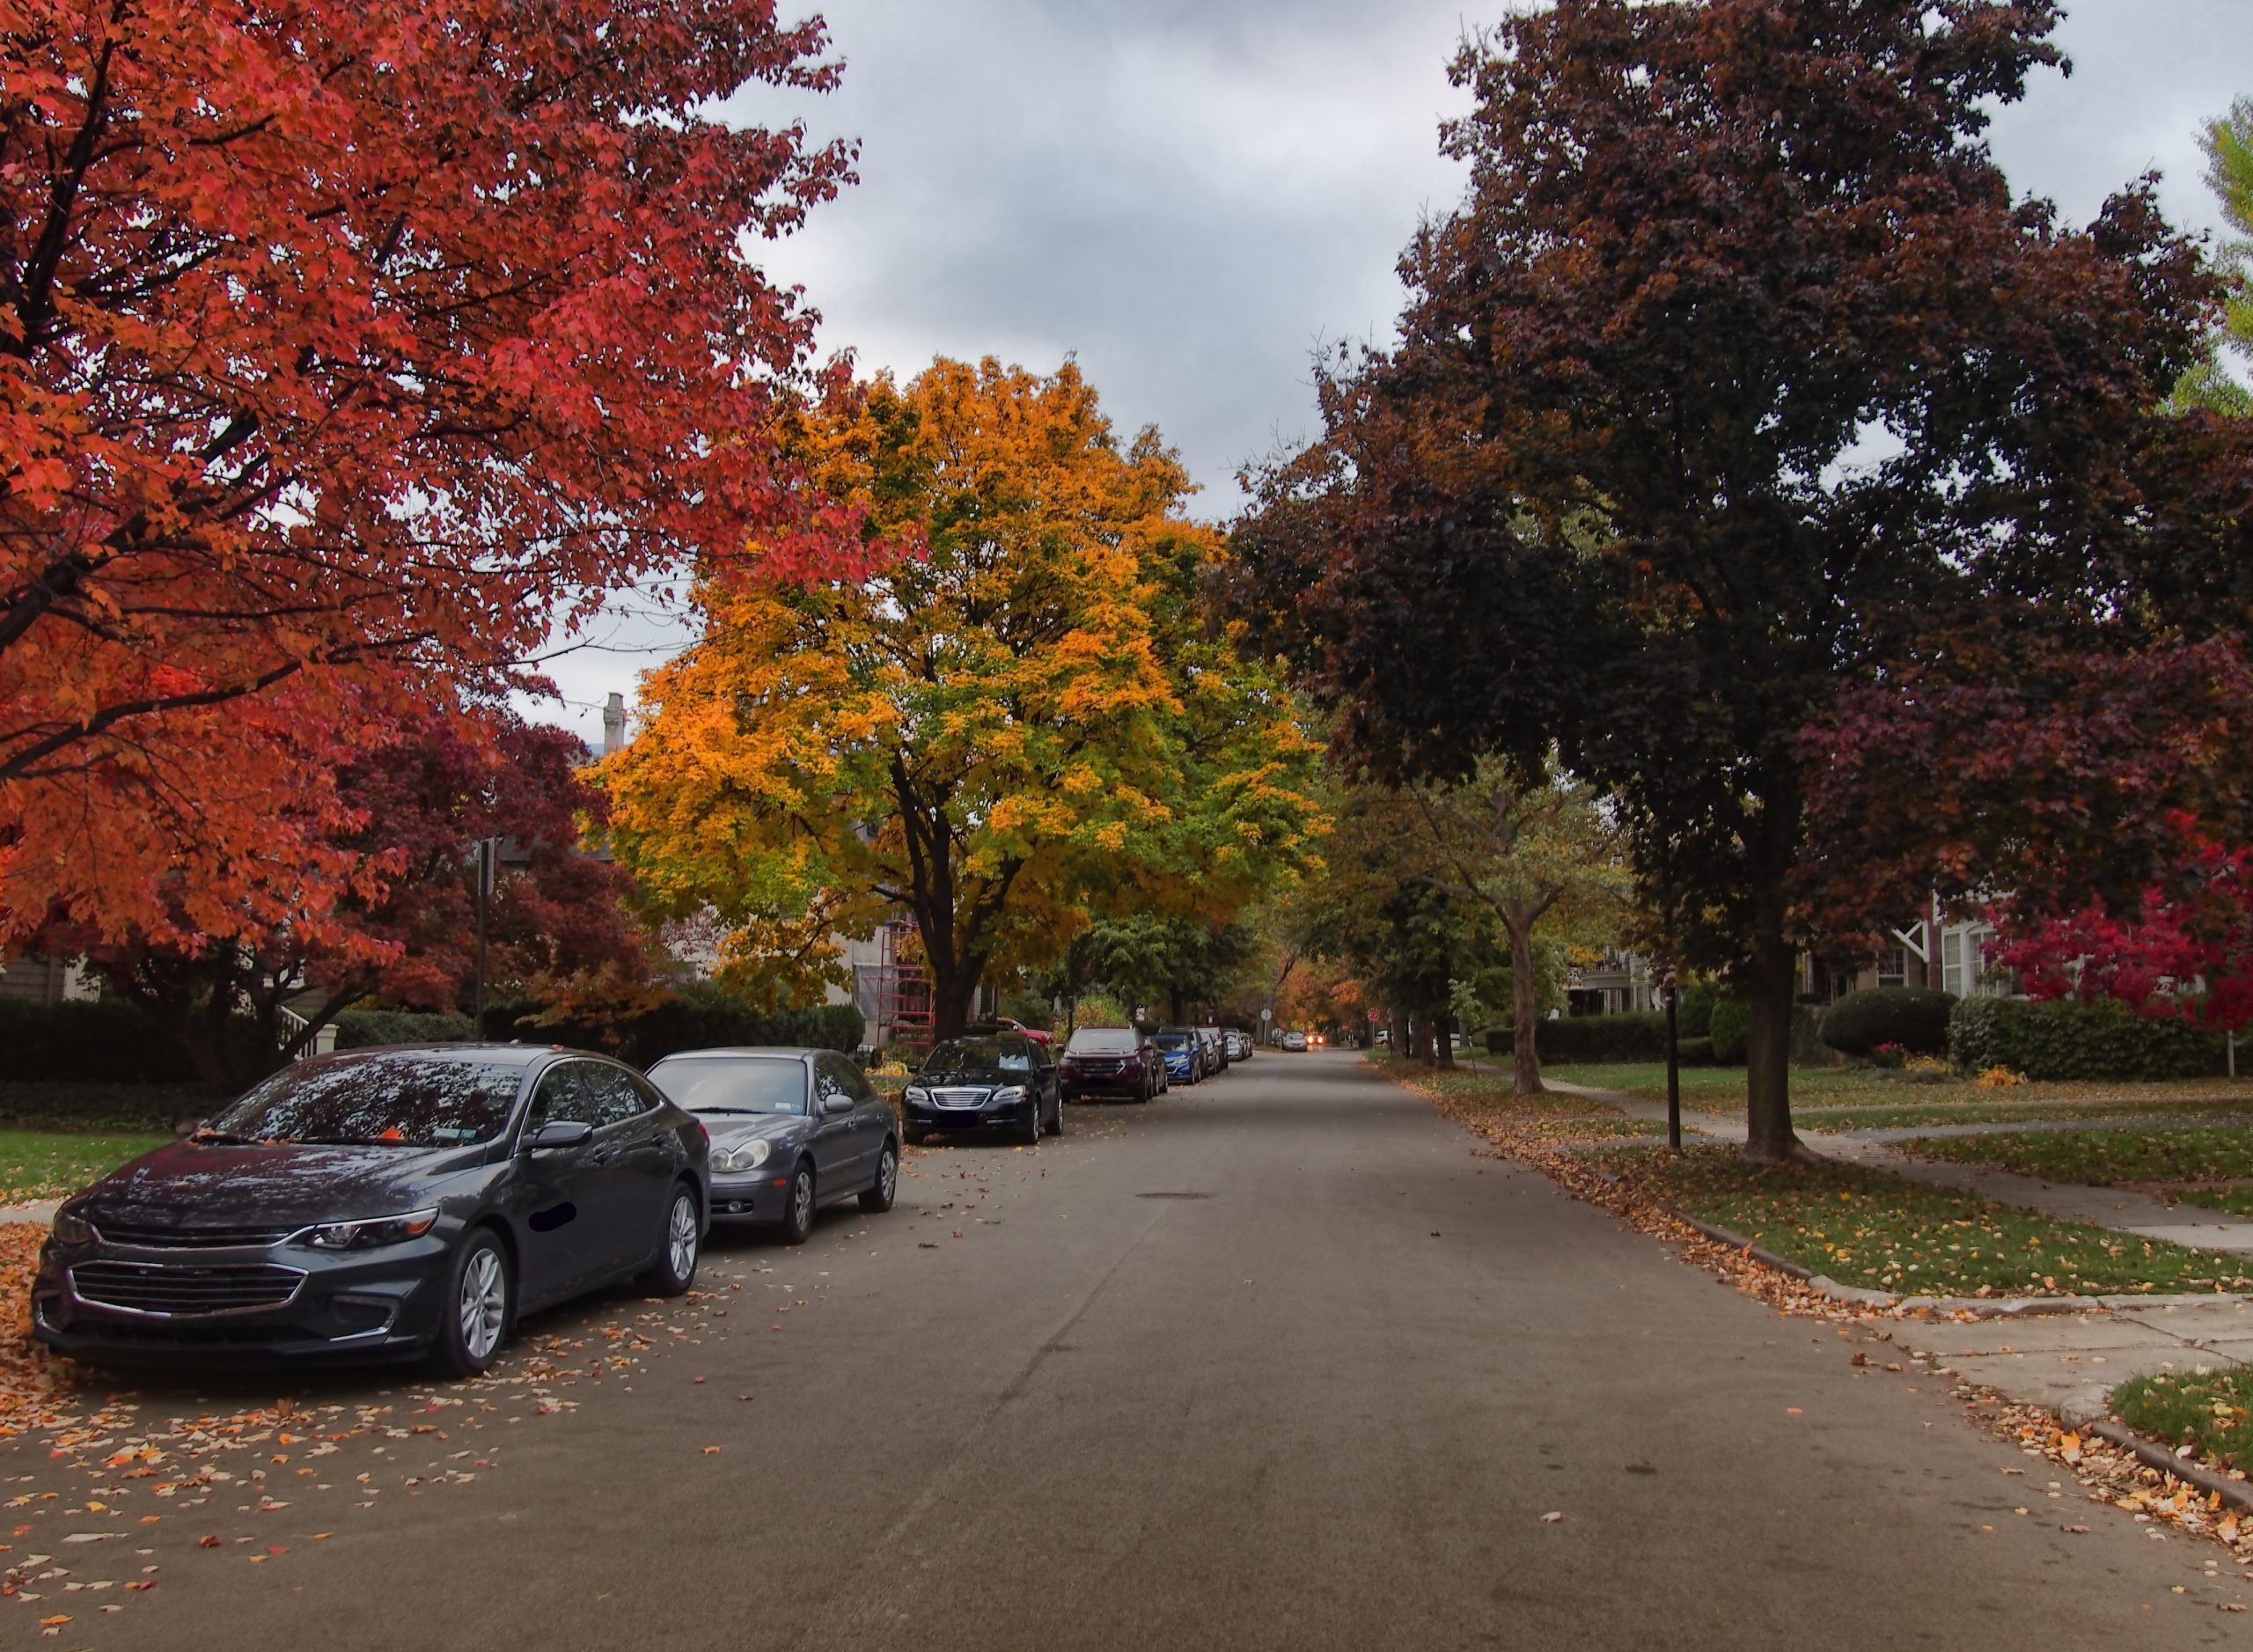 Voitures stationnées le lon d'un chemin bordé d'arbres en couleurs d'automne